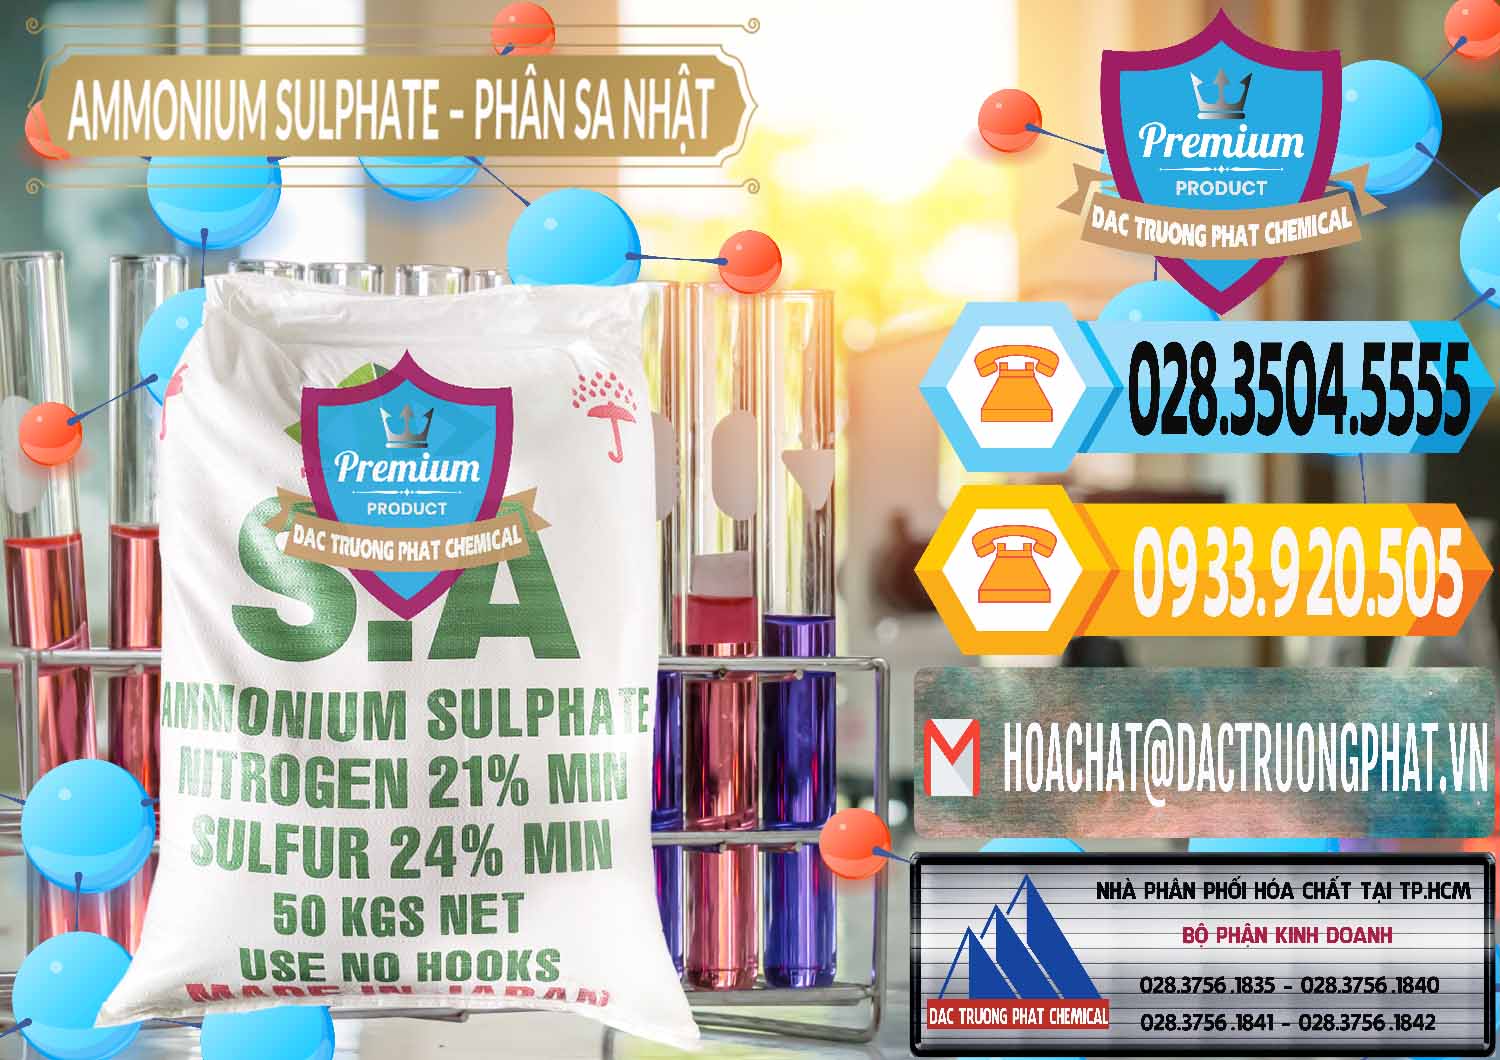 Công ty chuyên kinh doanh & bán Ammonium Sulphate – Phân Sa Nhật Japan - 0023 - Nơi phân phối ( kinh doanh ) hóa chất tại TP.HCM - hoachattayrua.net